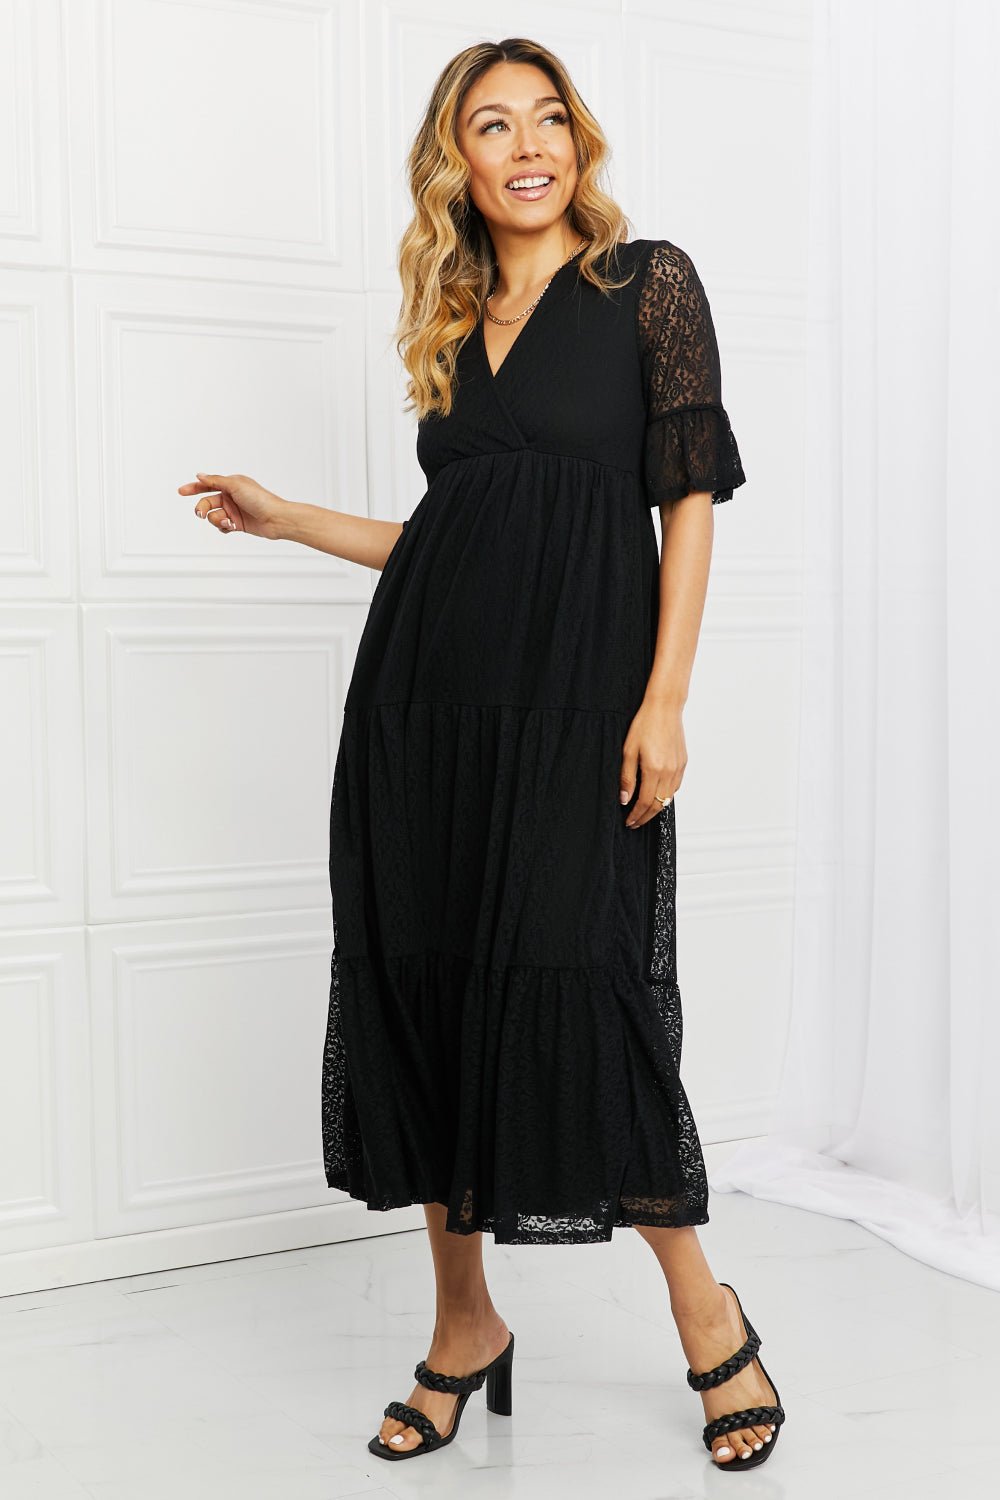 Lace Tiered Midi Dress in BlackMidi DressP & Rose